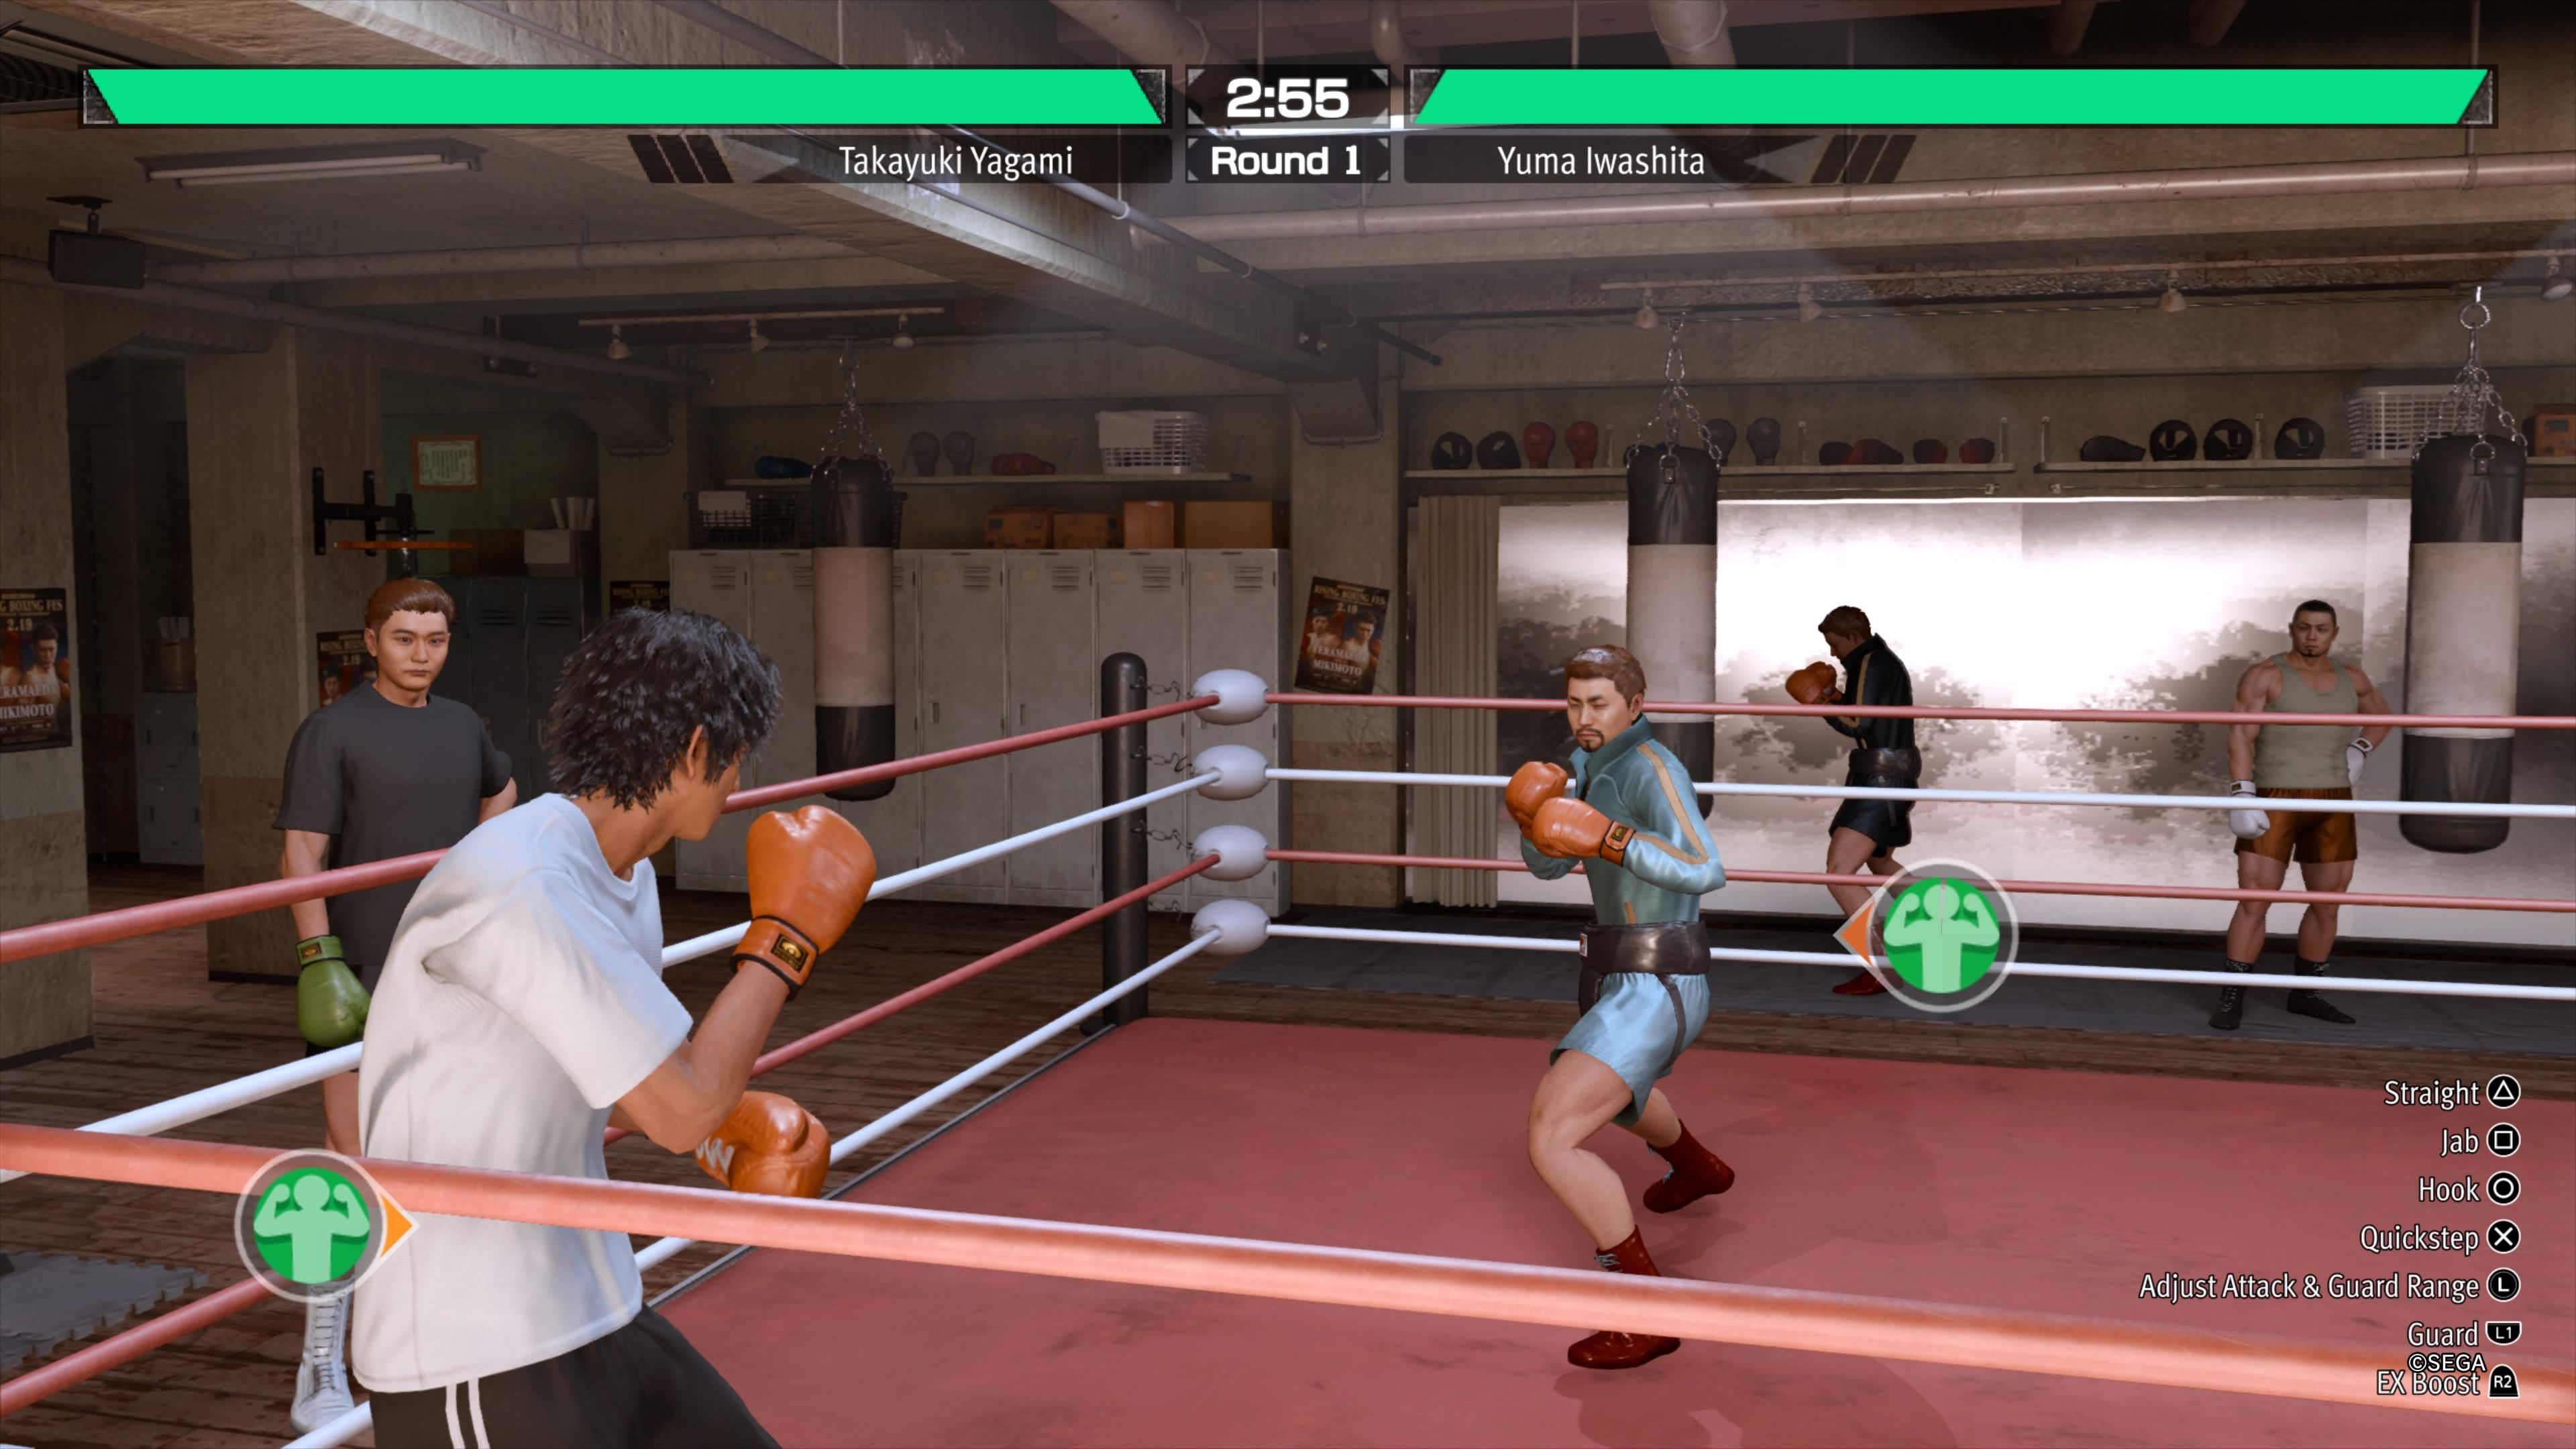 У бокса свой UI, другое управление и уникальные приемы, которые можно использовать только на ринге. Скриншот из Lost Judgment